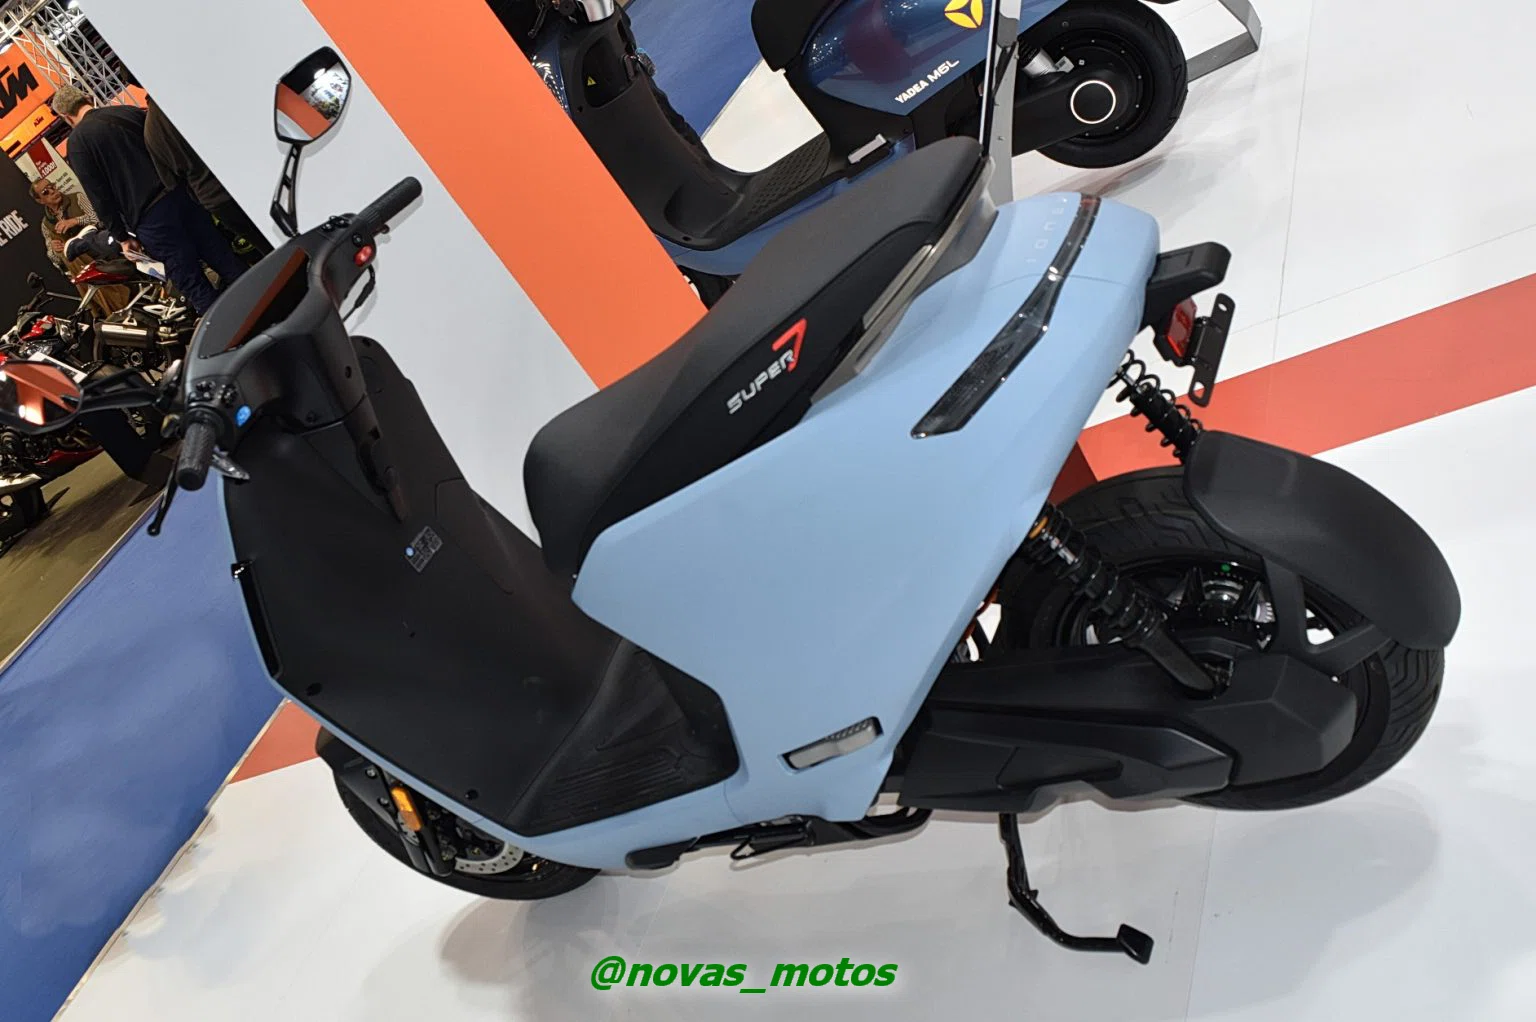 fotos-scooter-ionex-s7-abs Conheça a Ionex S7 ABS - A scooter elétrica de última geração da Kymco